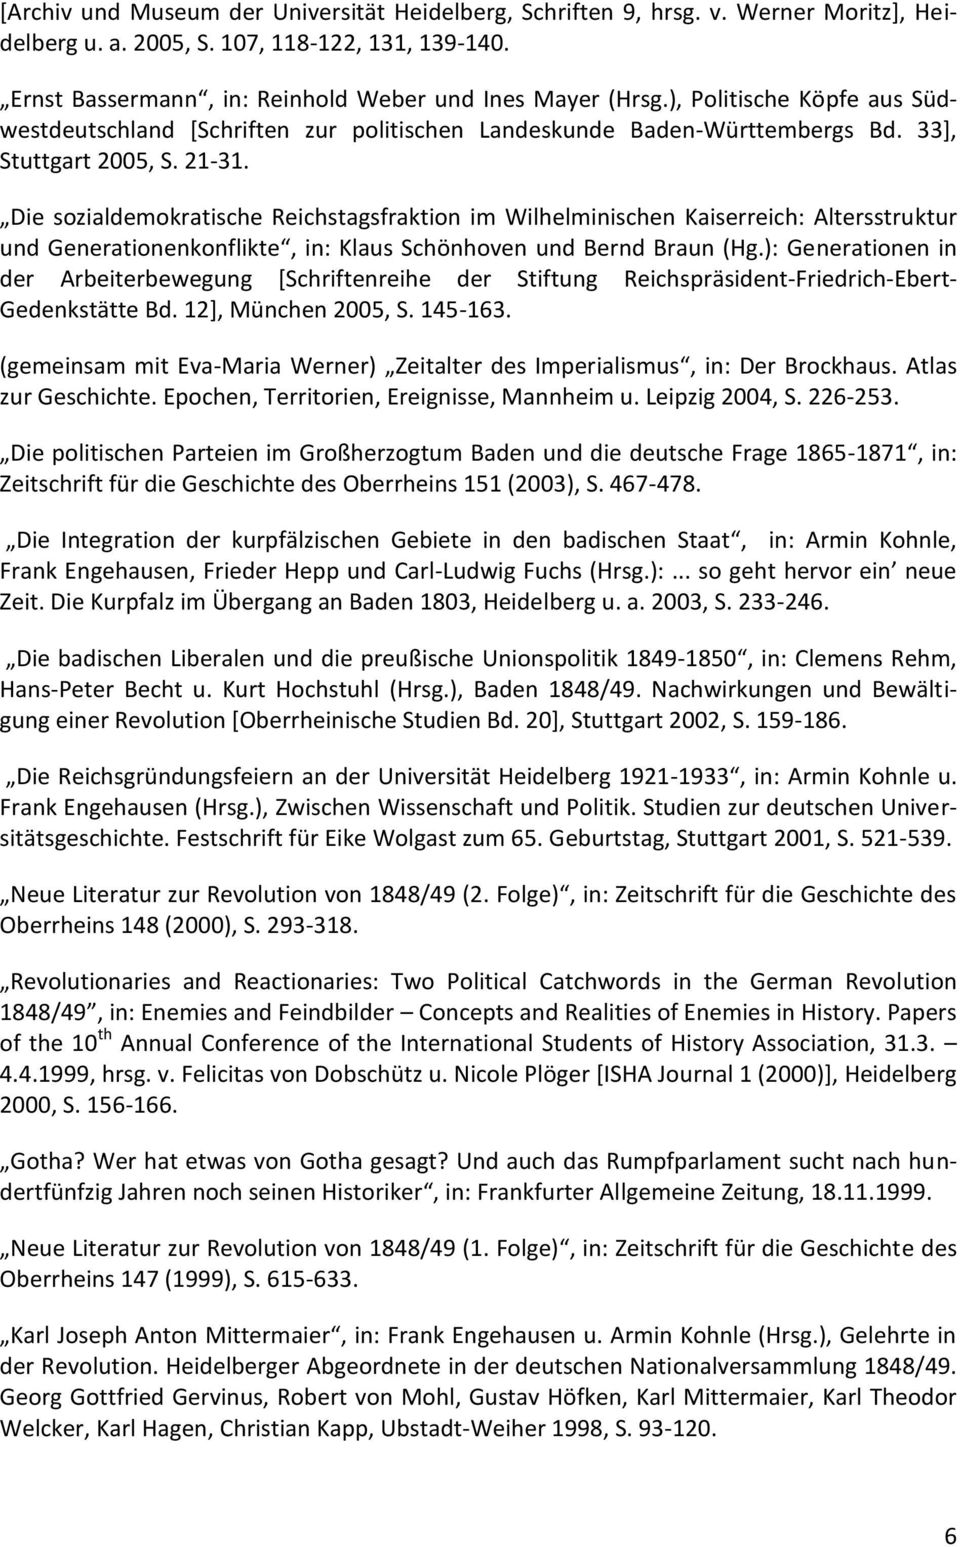 Die sozialdemokratische Reichstagsfraktion im Wilhelminischen Kaiserreich: Altersstruktur und Generationenkonflikte, in: Klaus Schönhoven und Bernd Braun (Hg.